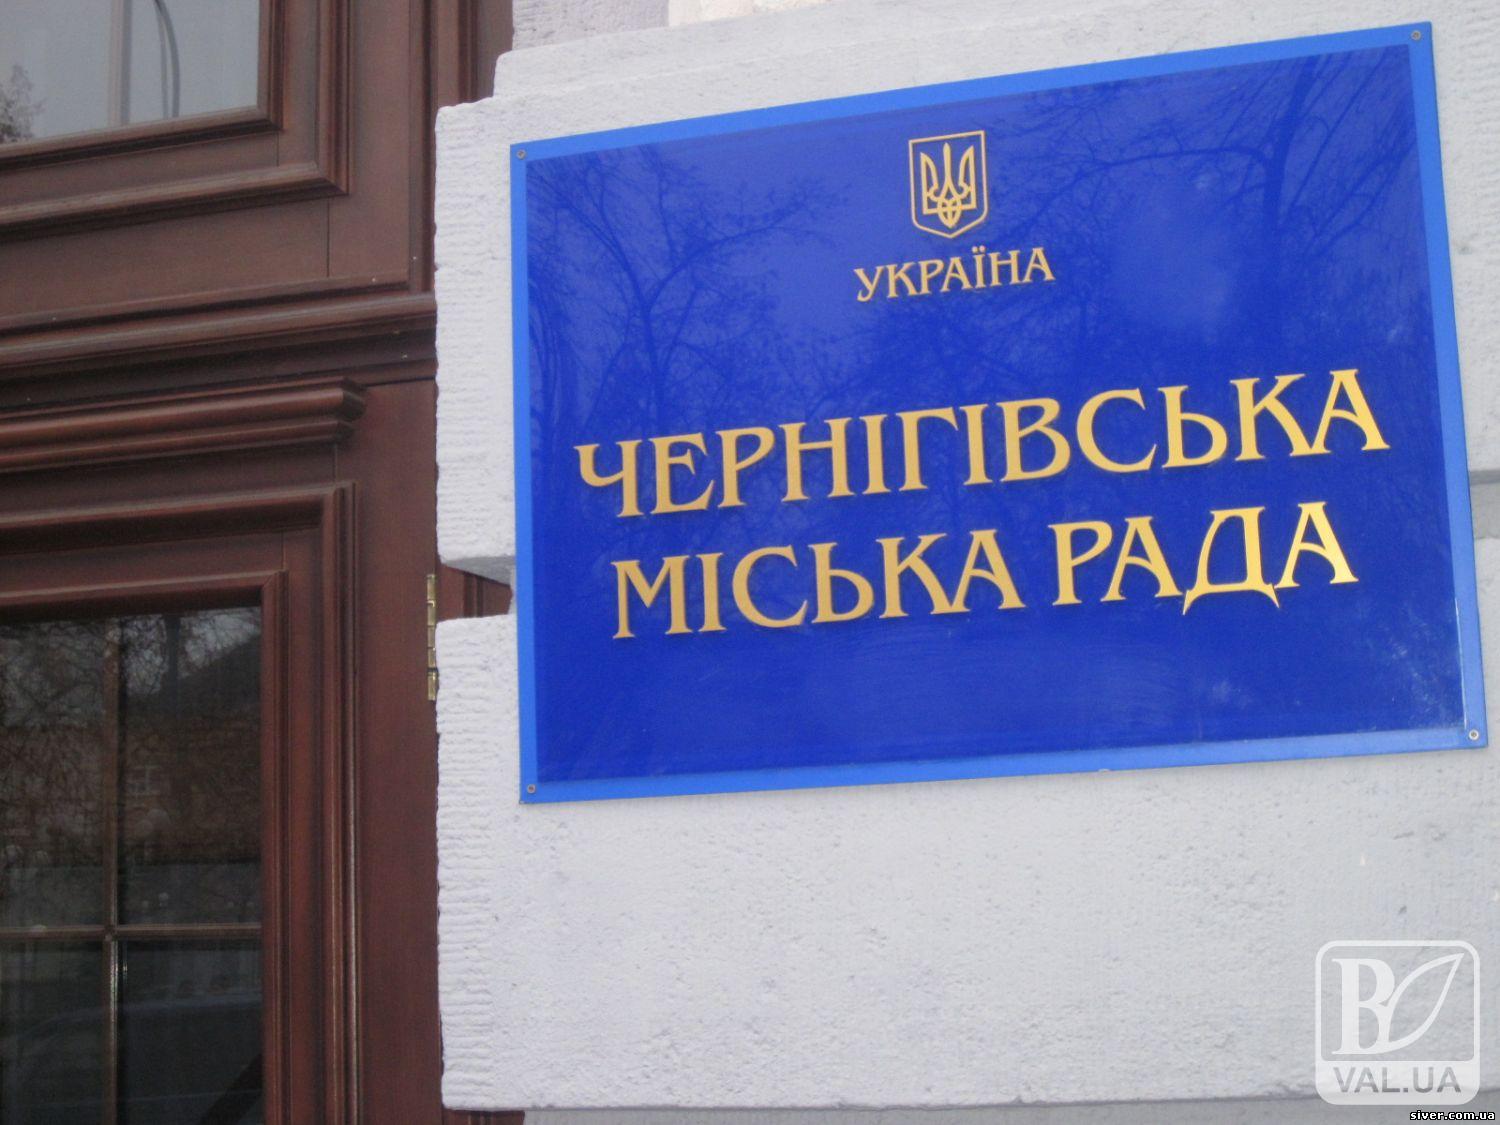 29 сесія Чернігівської міської ради розпочала свою роботу